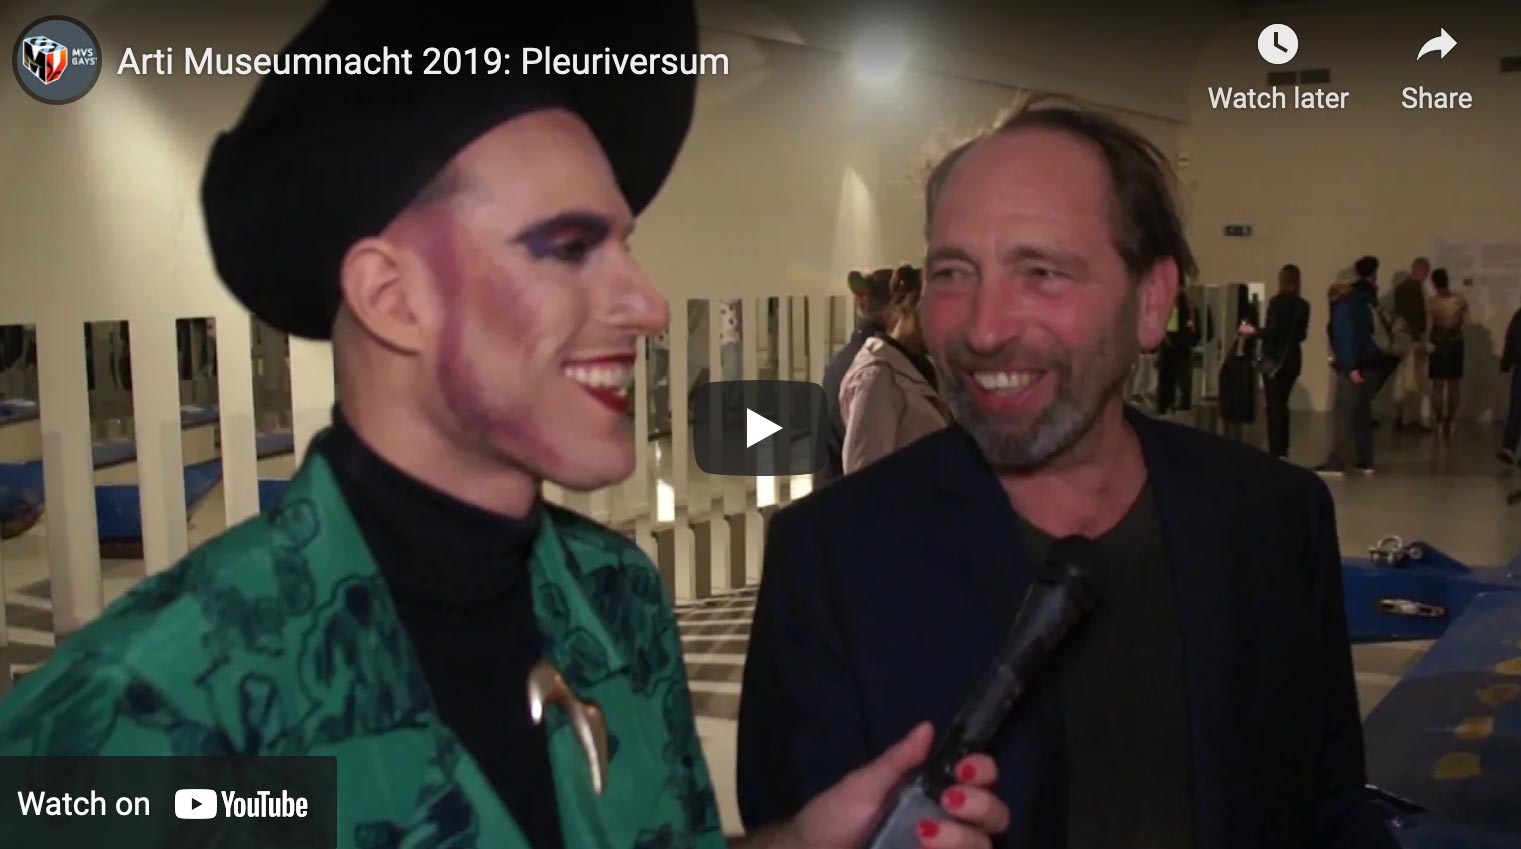 Arti Museumnacht 2019: Pleuriversum